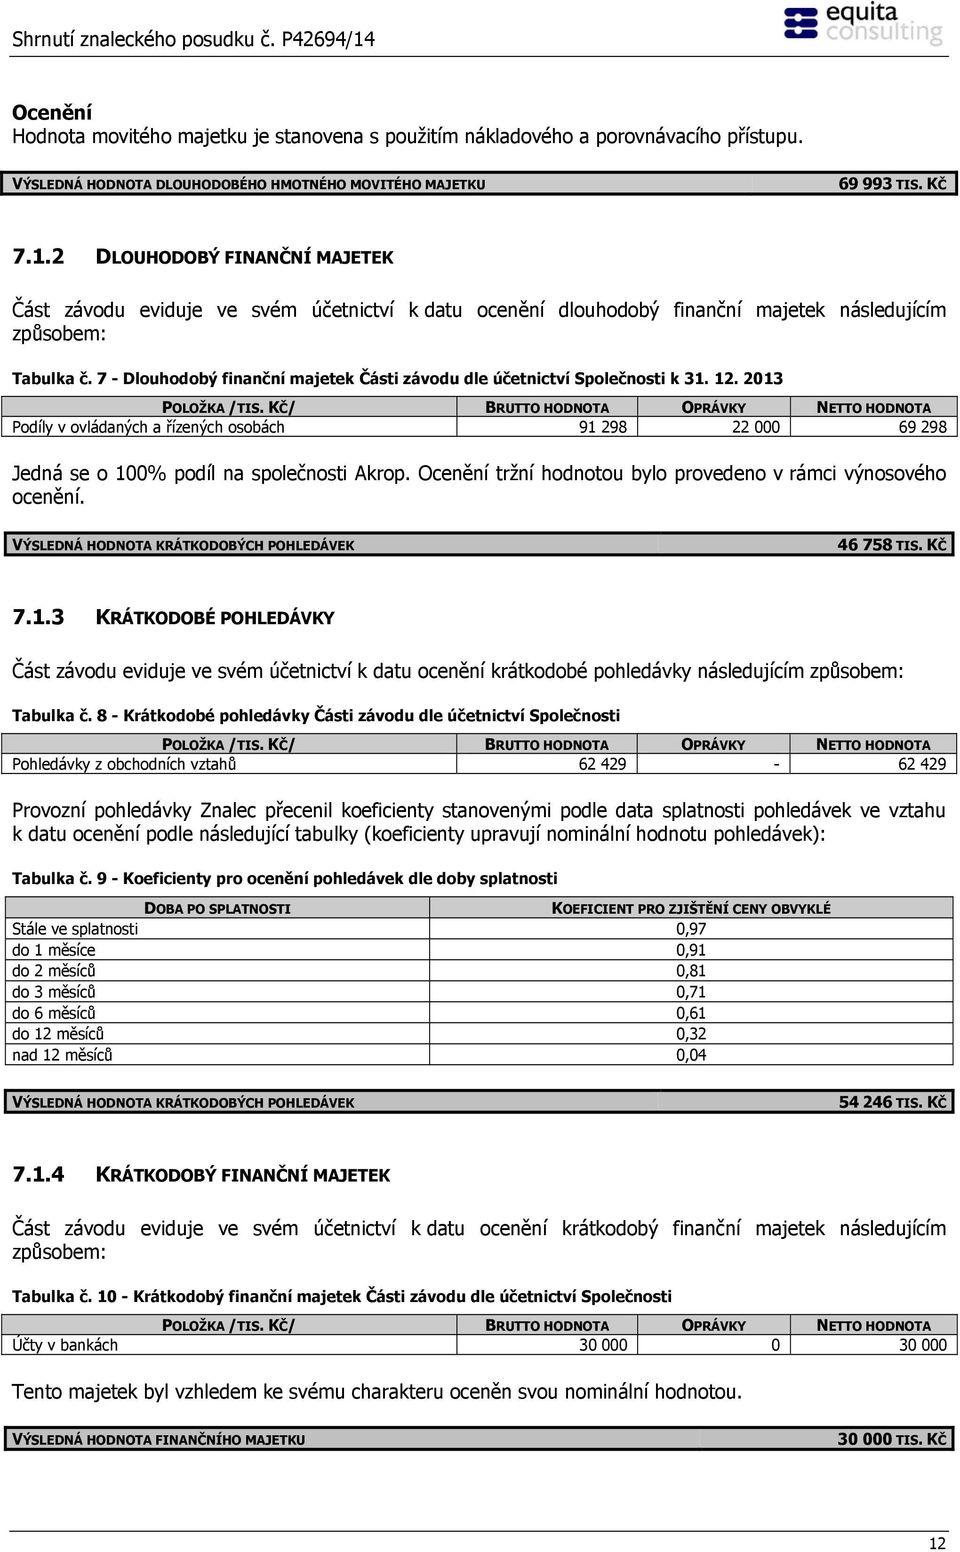 7 - Dlouhodobý finanční majetek Části závodu dle účetnictví Společnosti k 31. 12. 2013 POLOŽKA /TIS.